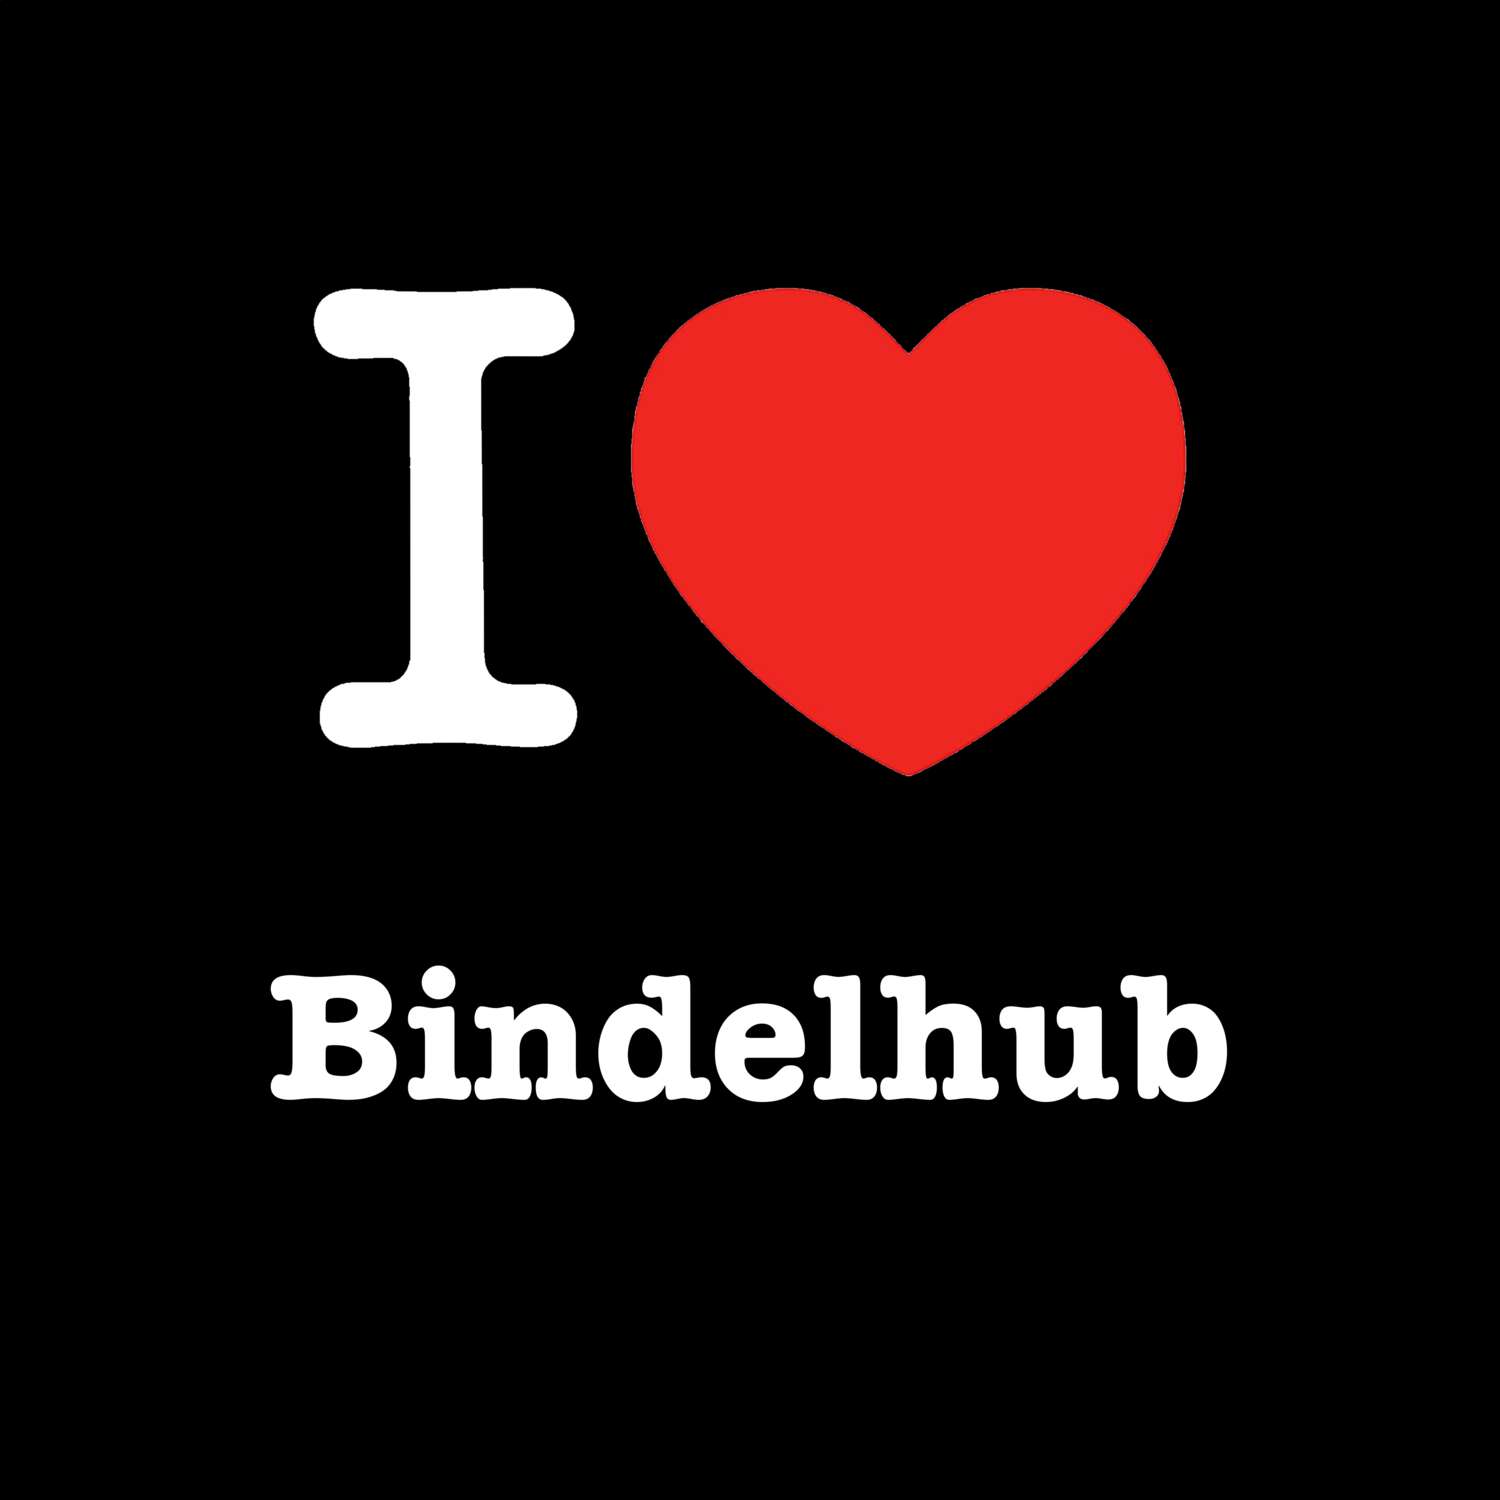 Bindelhub T-Shirt »I love«